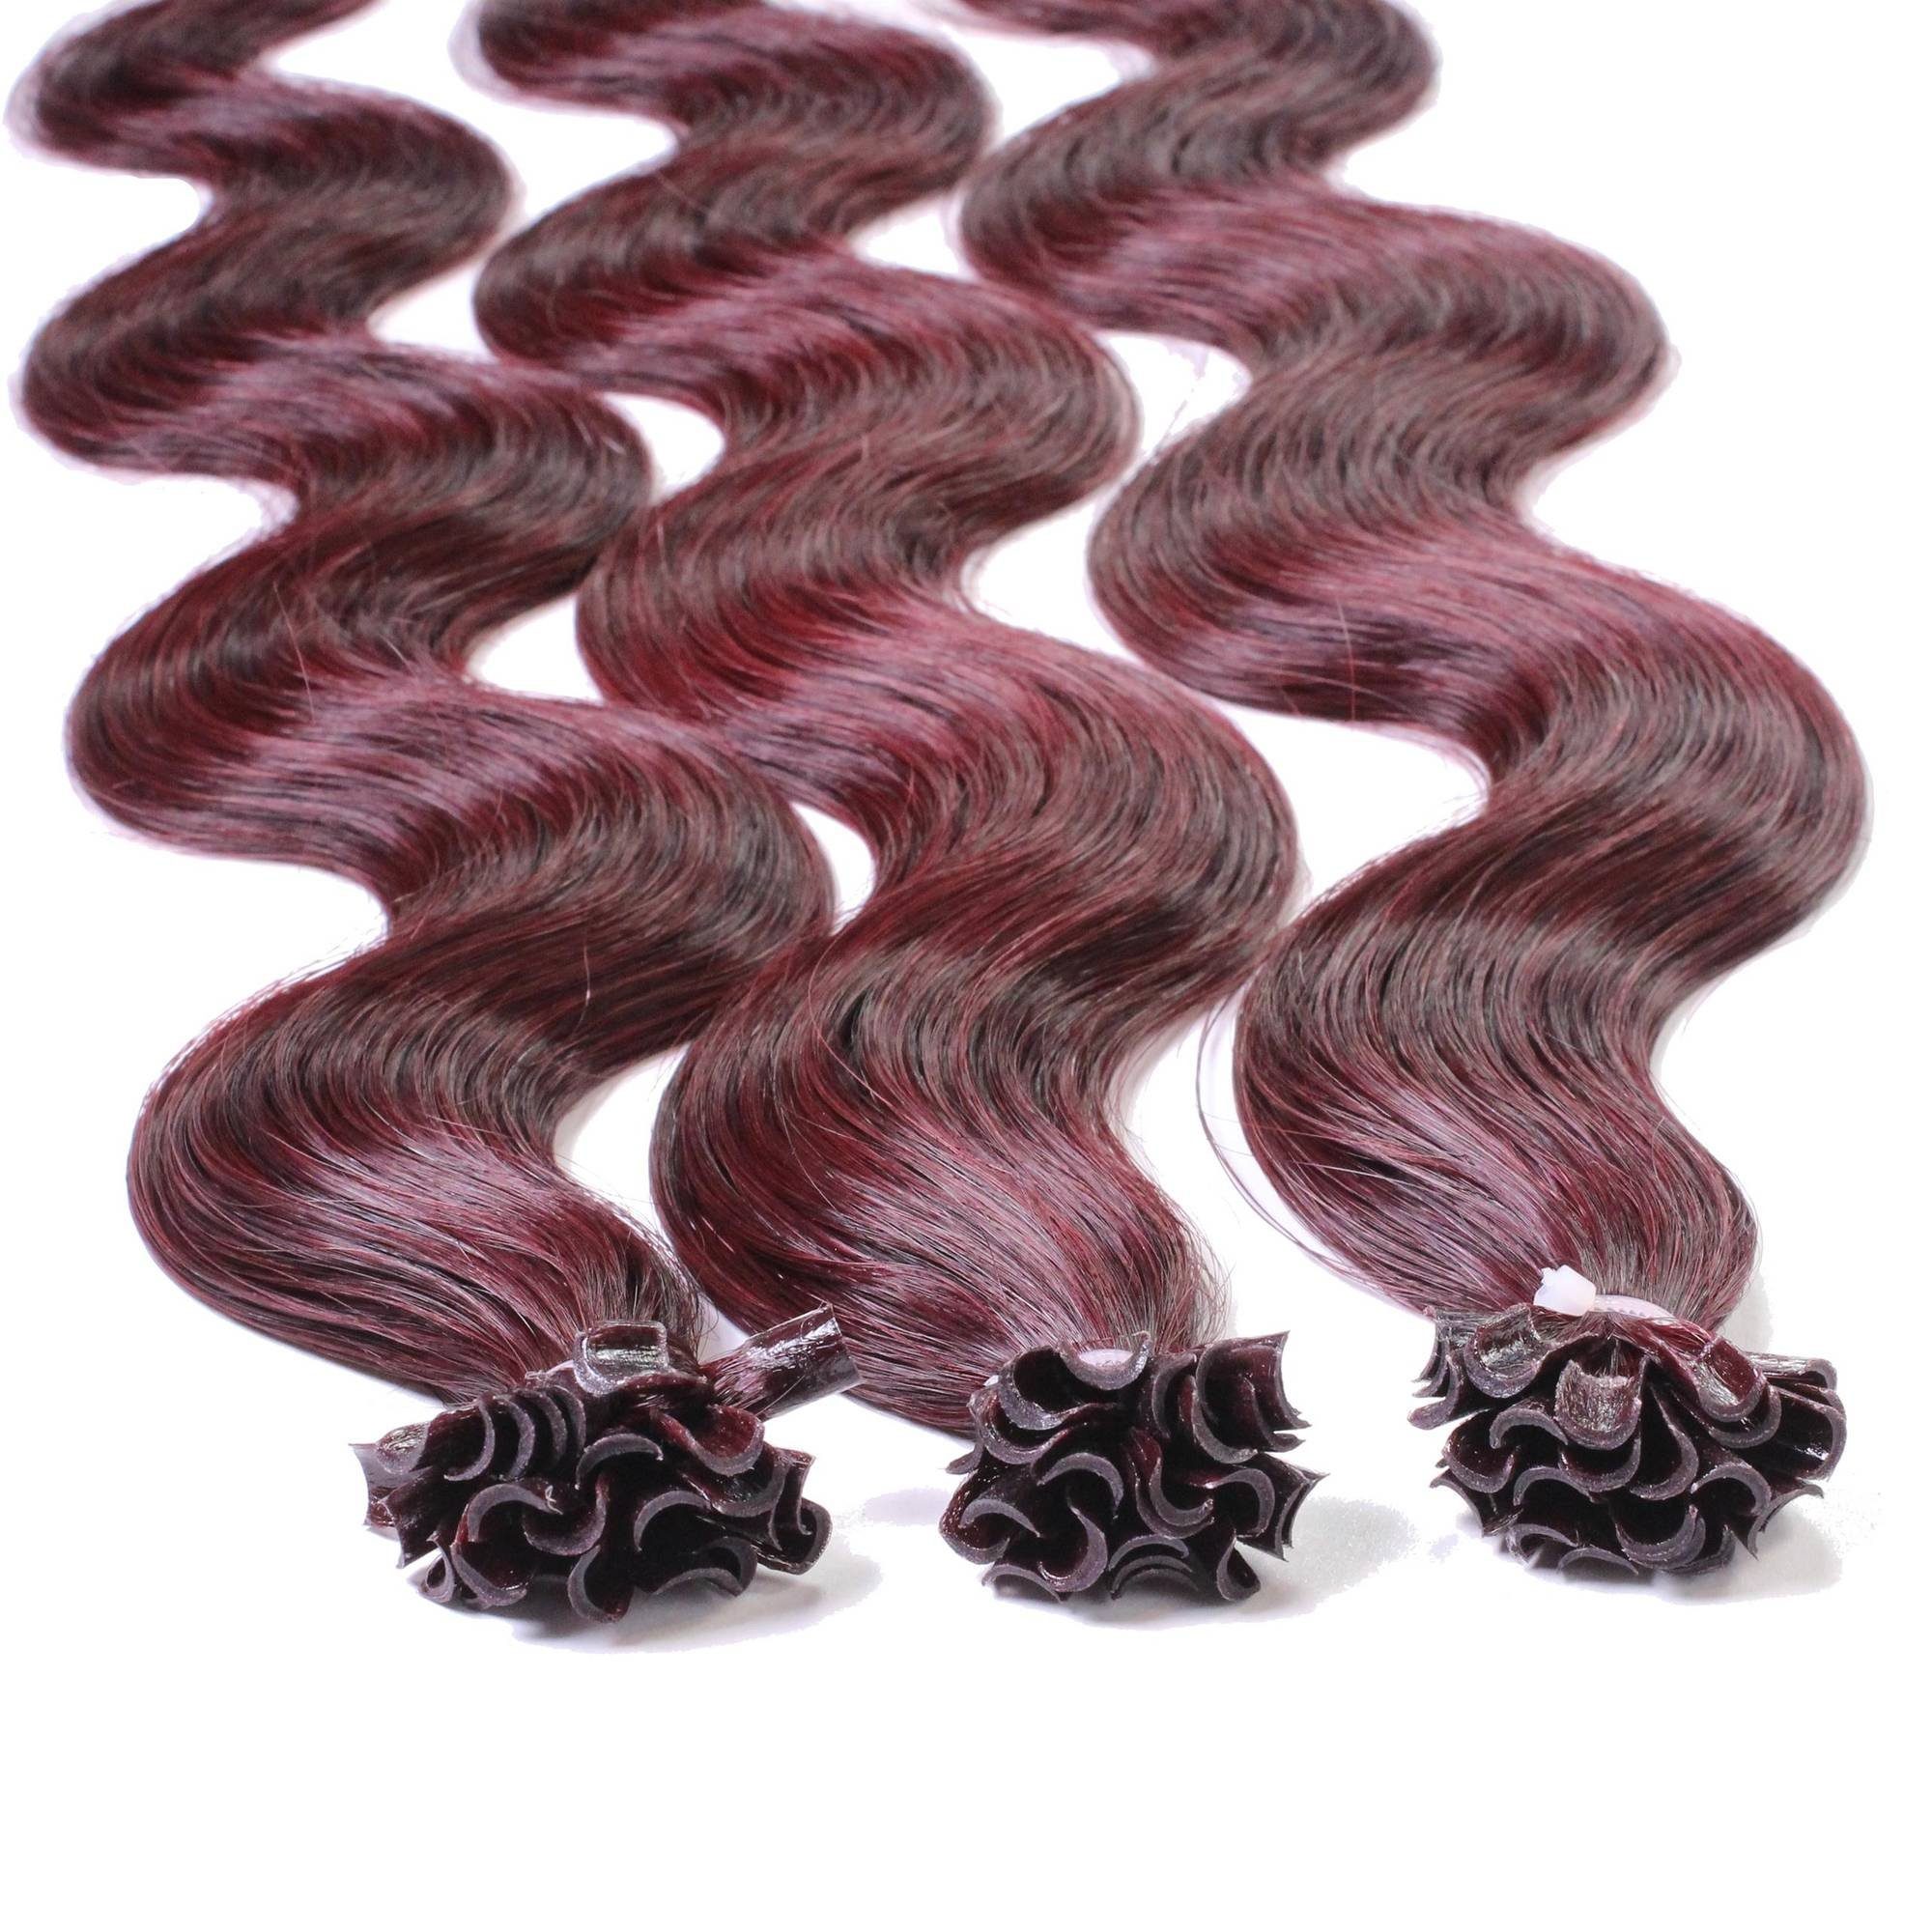 40cm gewellt Extensions Violett Echthaar-Extension Hellbraun hair2heart #55/66 0.5g Bonding